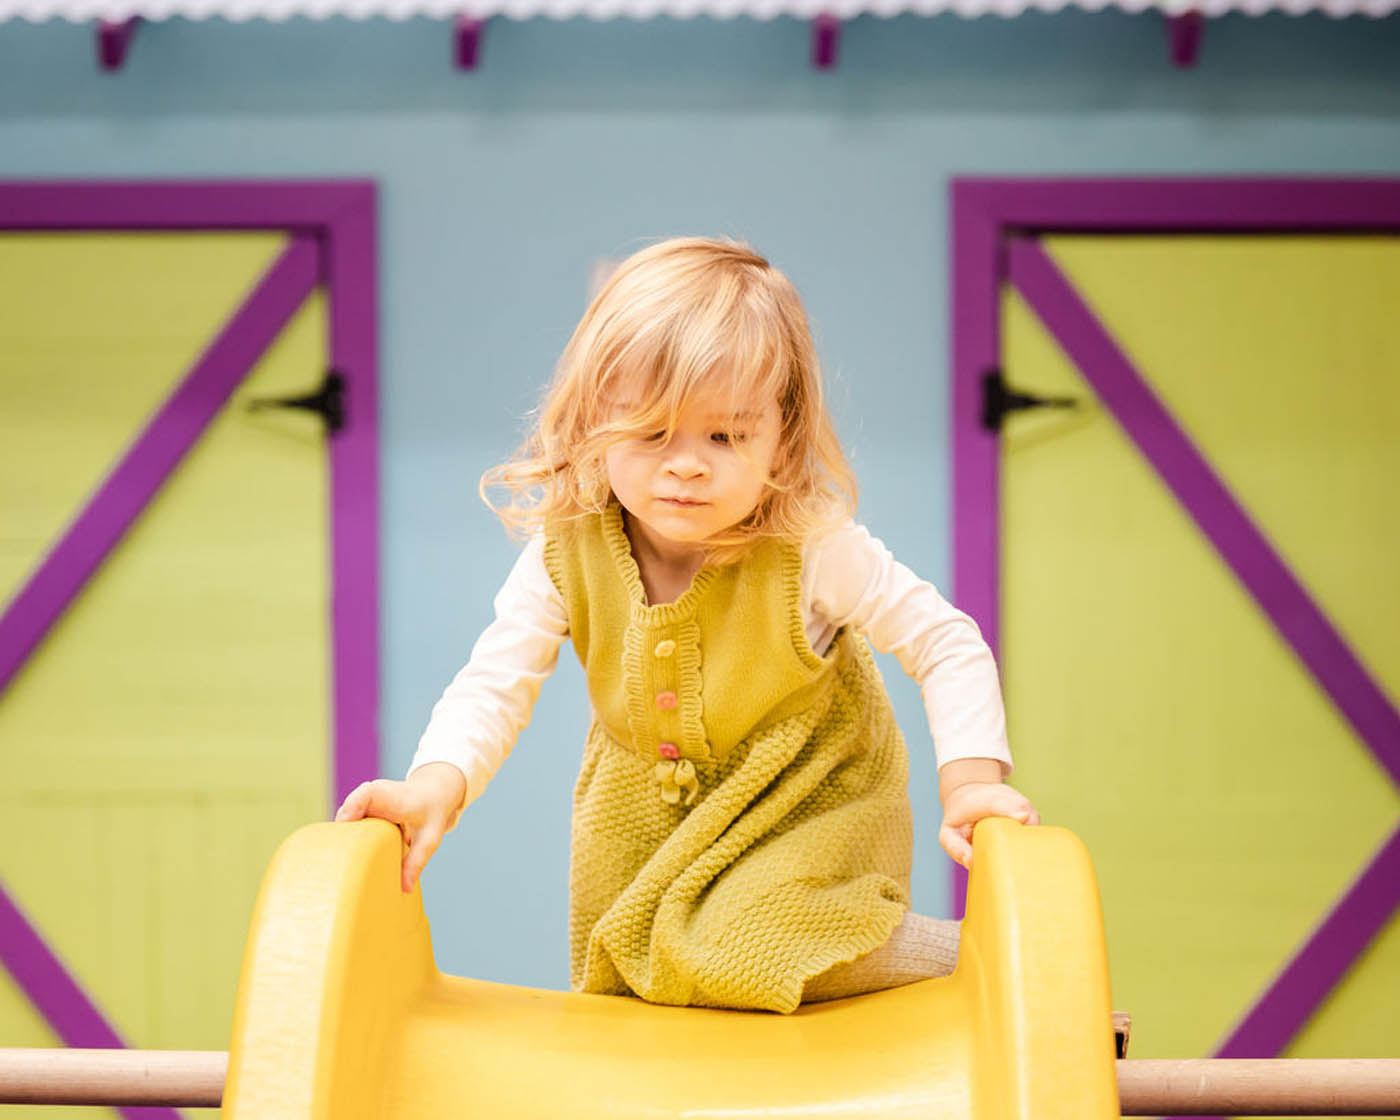 A girl climbing up a yellow slide enjoying open play in St. Petersburg, FL.